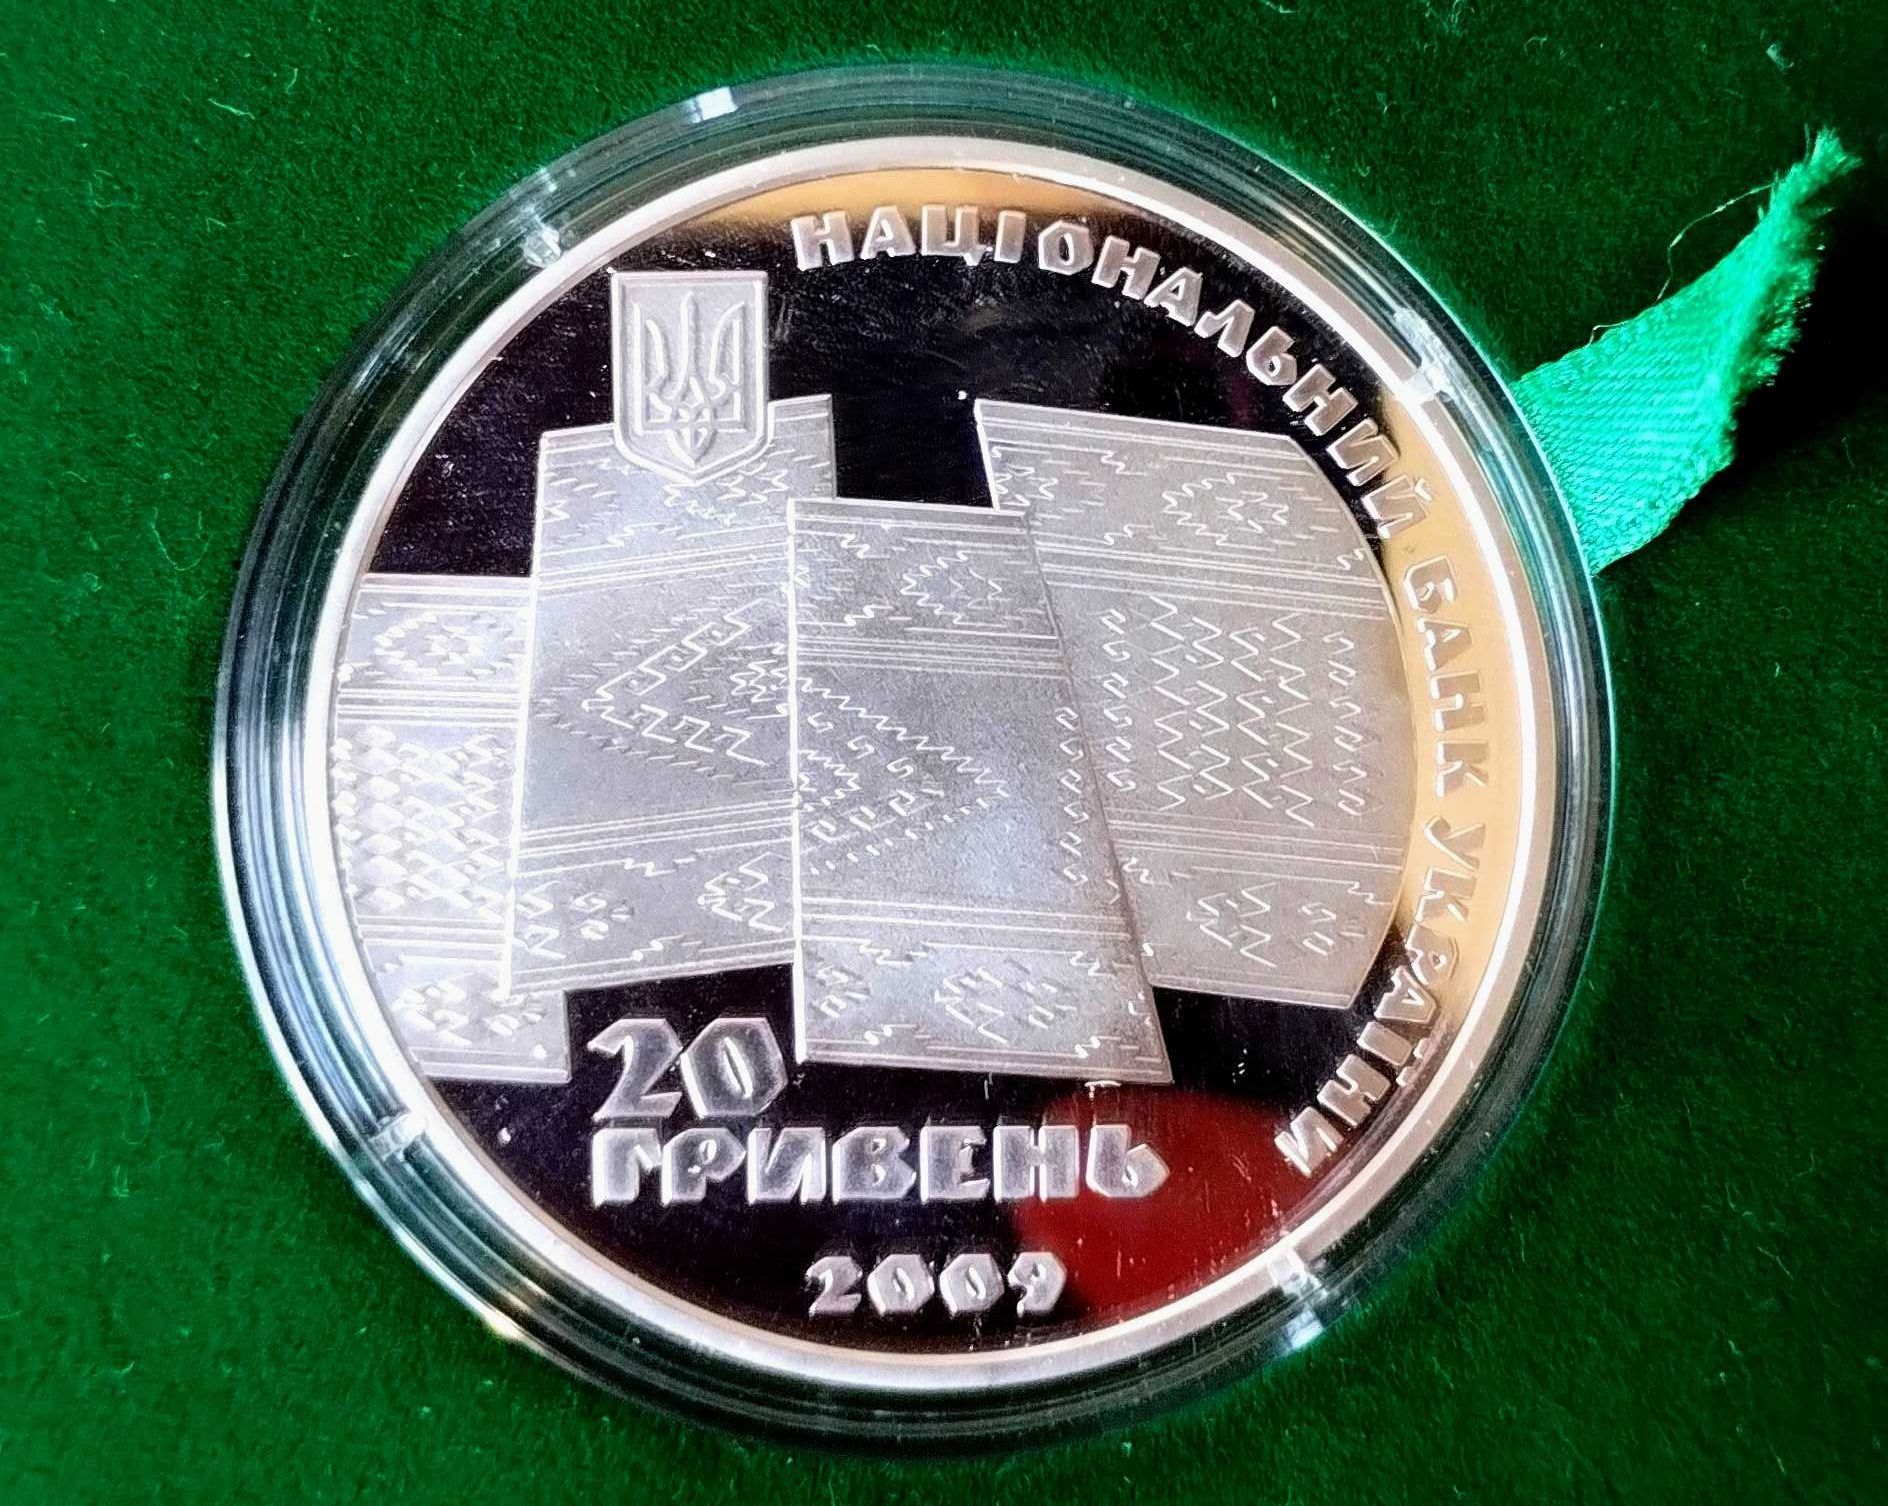 Монети України Срібло 20 грн 70 років проголошення Карпатської України